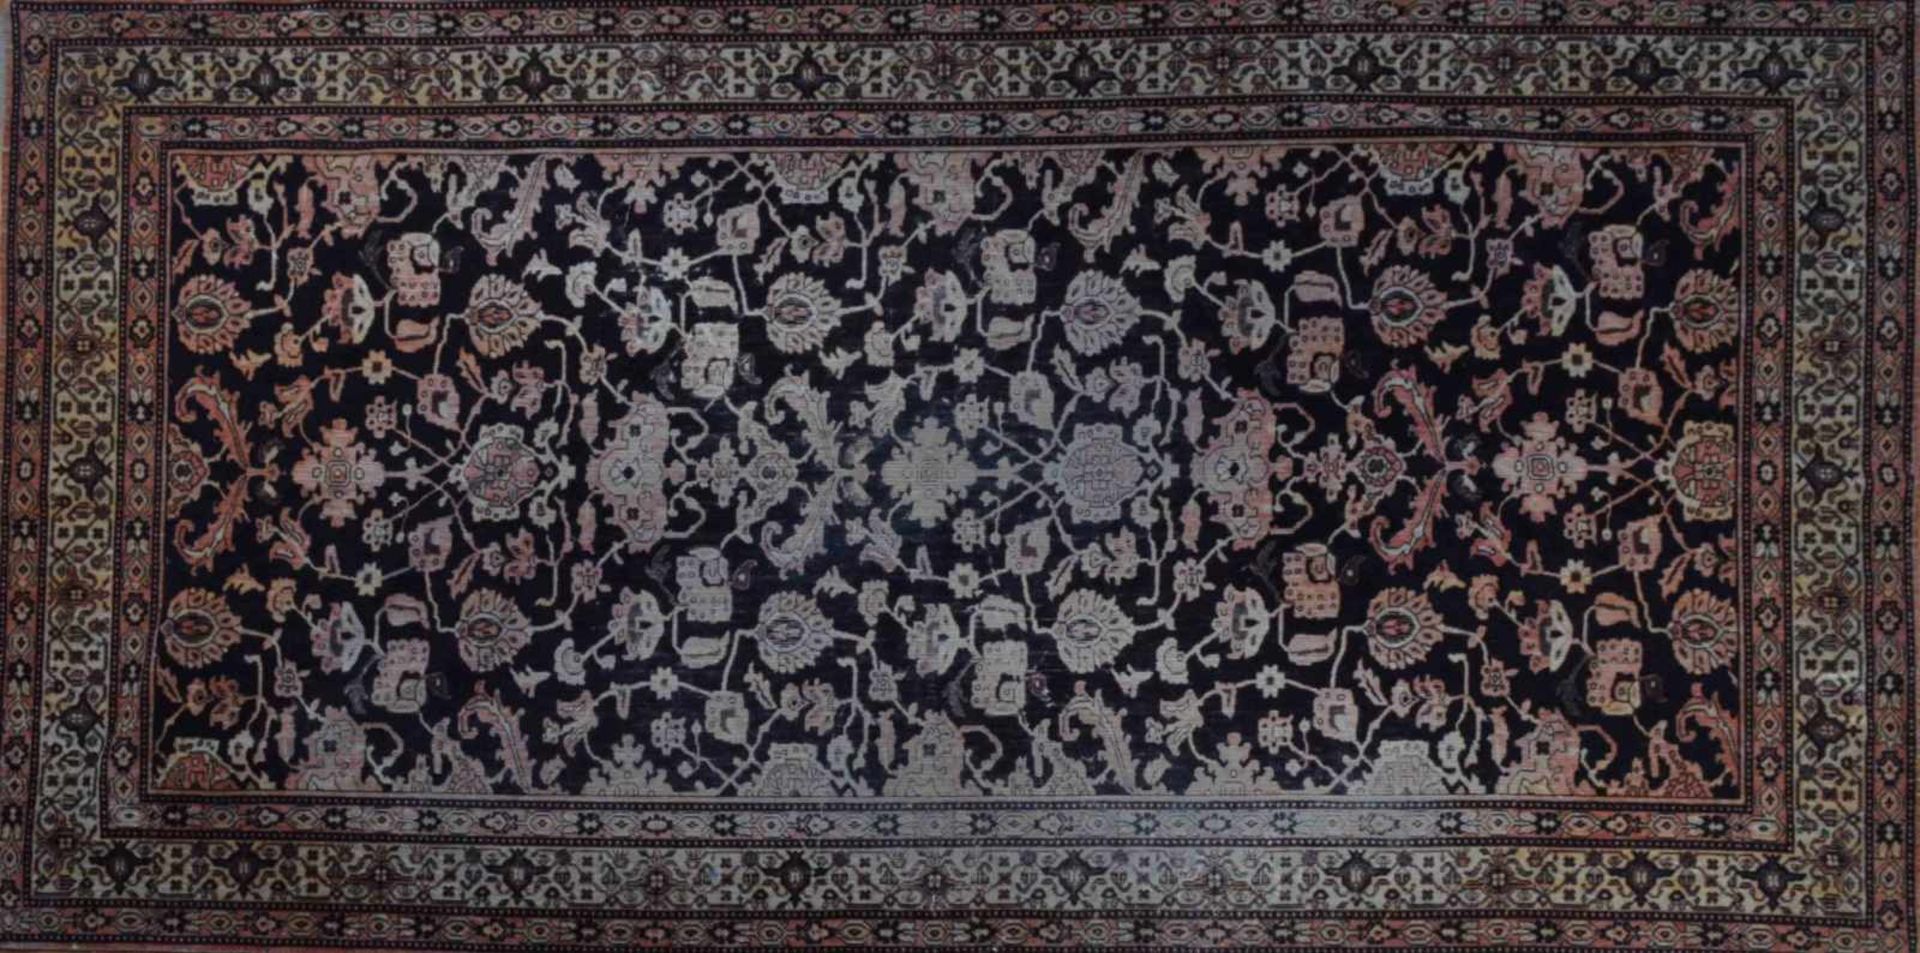 alter orientalischer Teppich / Wandteppichhandgewebt, 2,80 m x 1,40 mold oriental carpet /